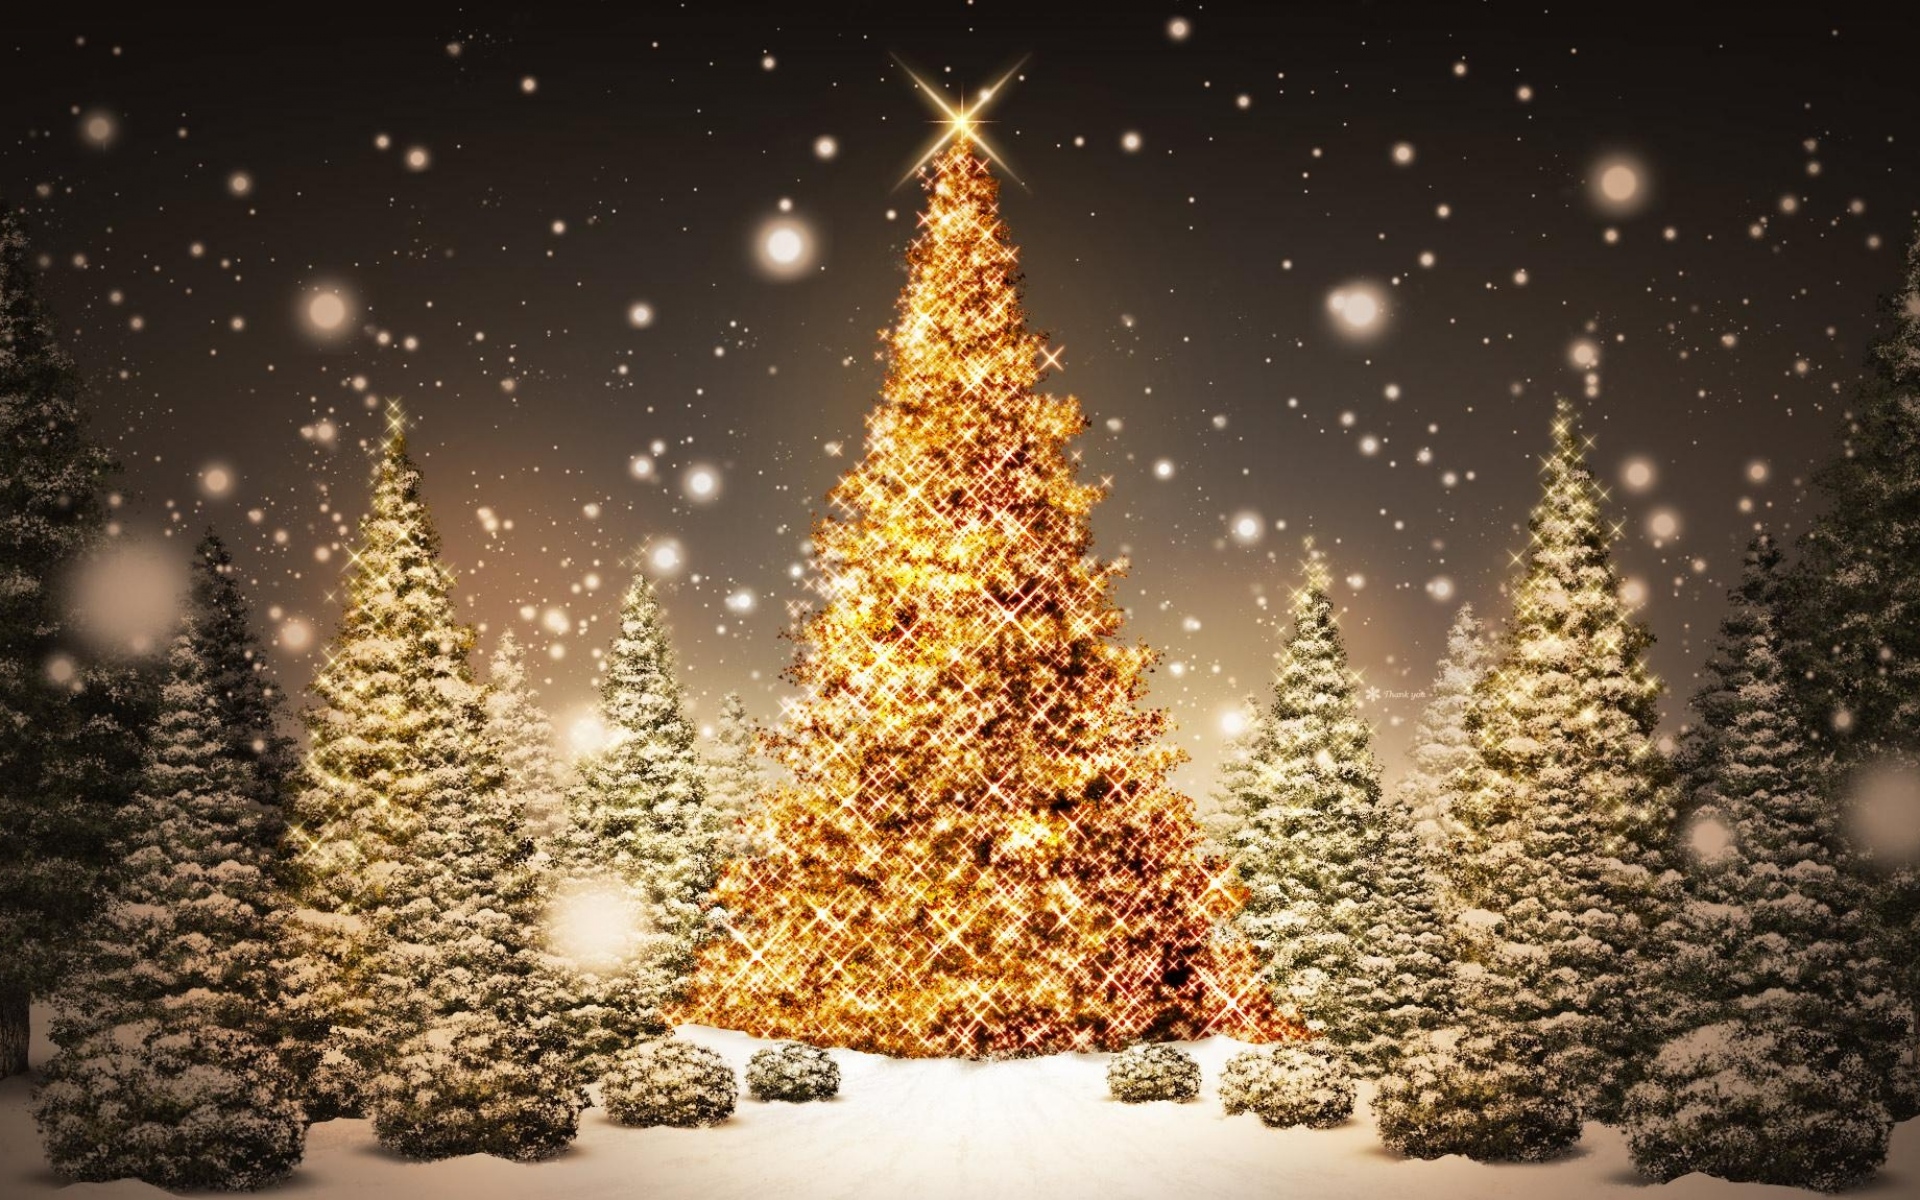 Картинки Новый год, рождество, деревья, дерево, открытка, снег, ночь, праздник фото и обои на рабочий стол